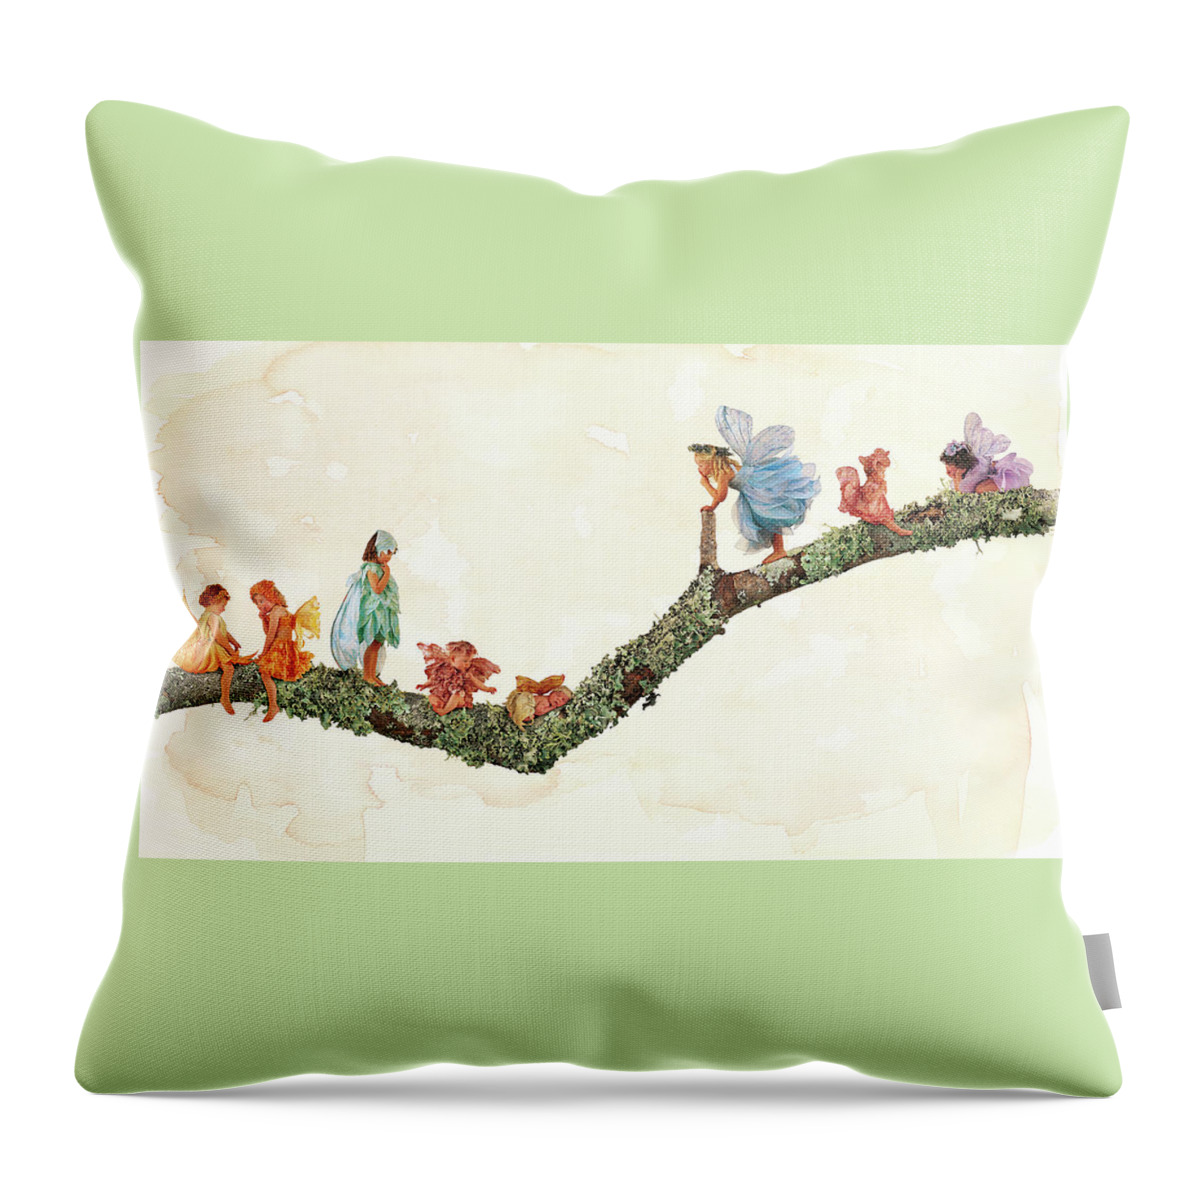 Fairies Throw Pillow featuring the photograph Branch Fairies by Anne Geddes